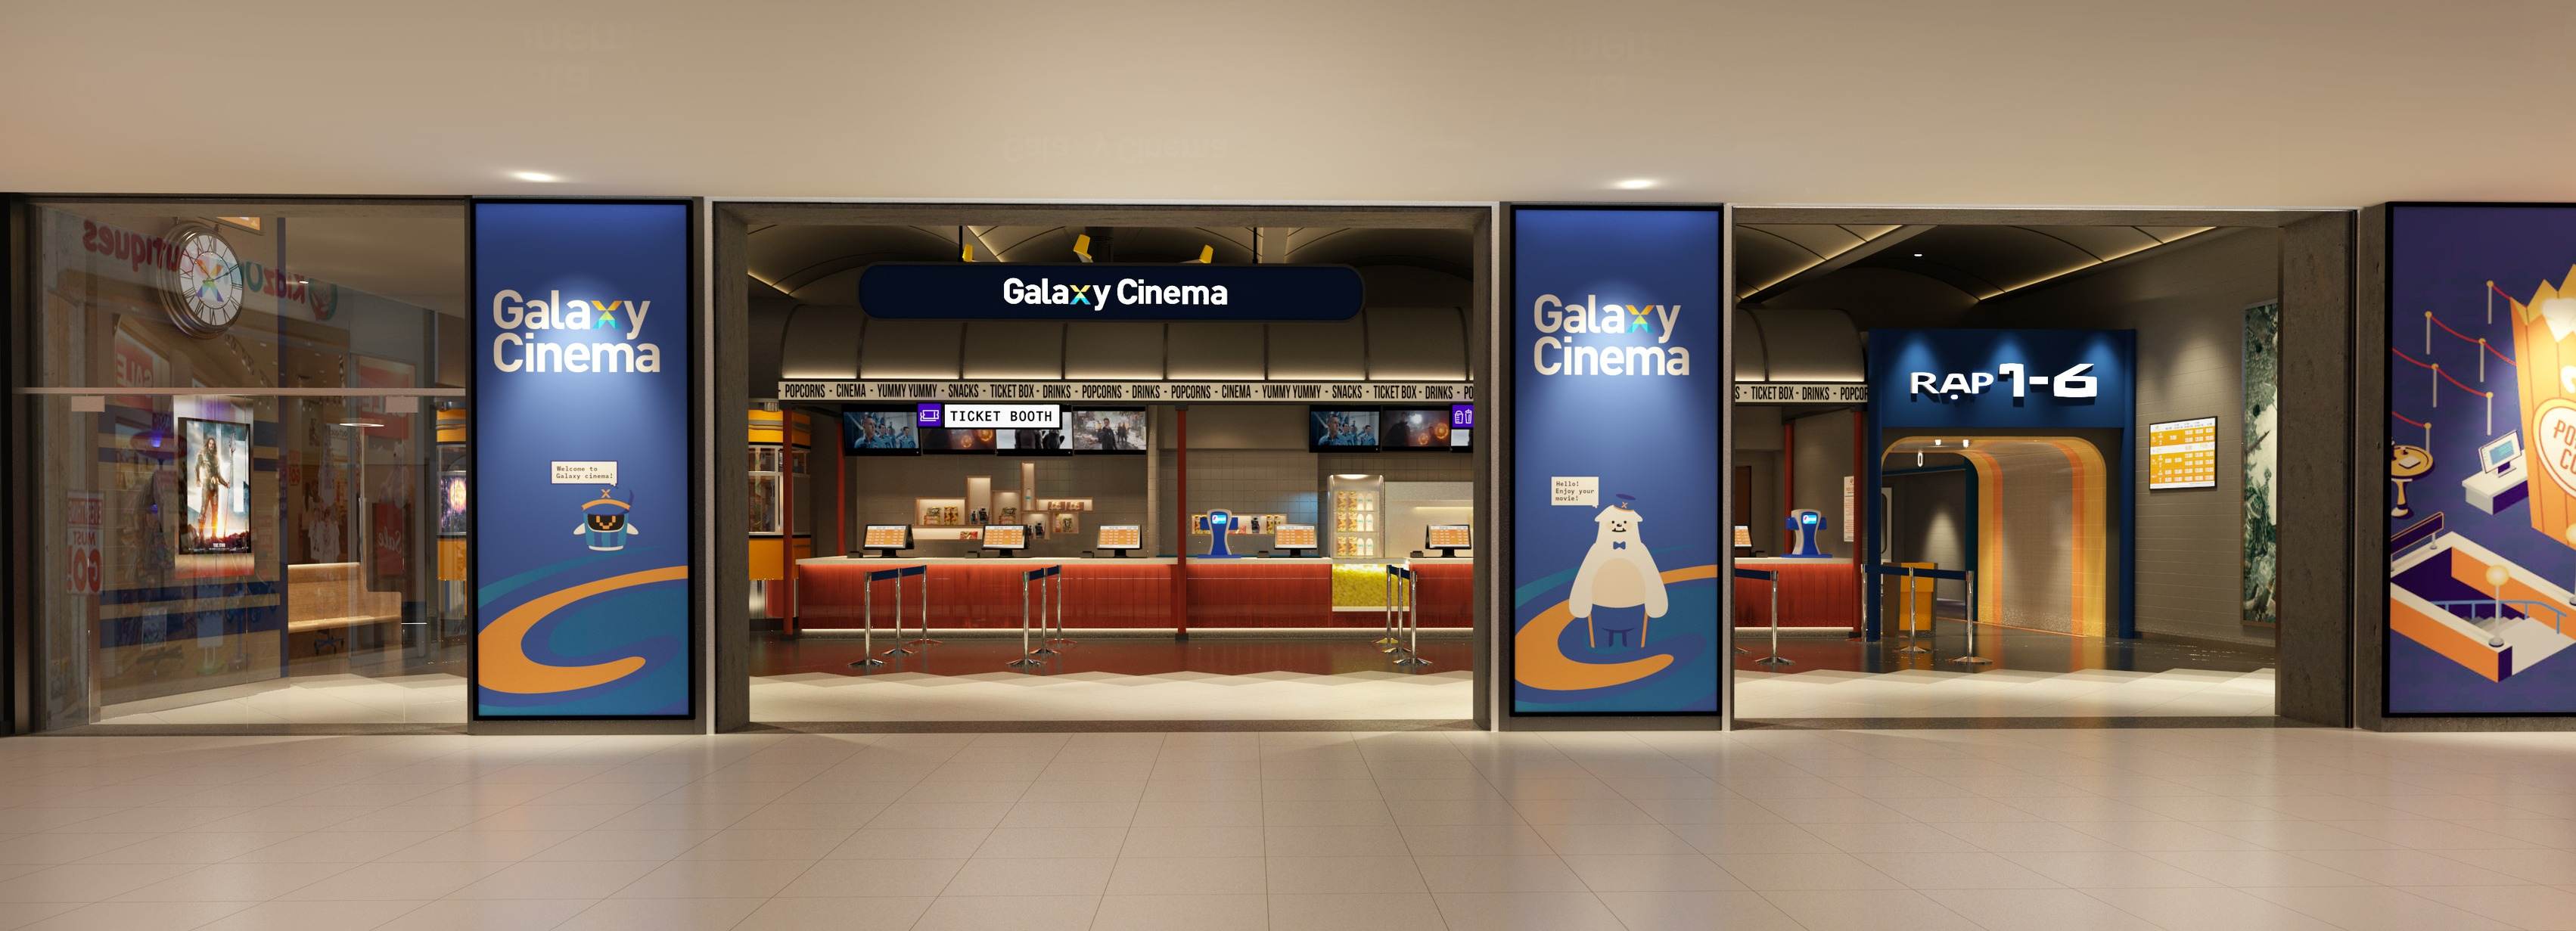 Galaxy Cinema Trường Chinh